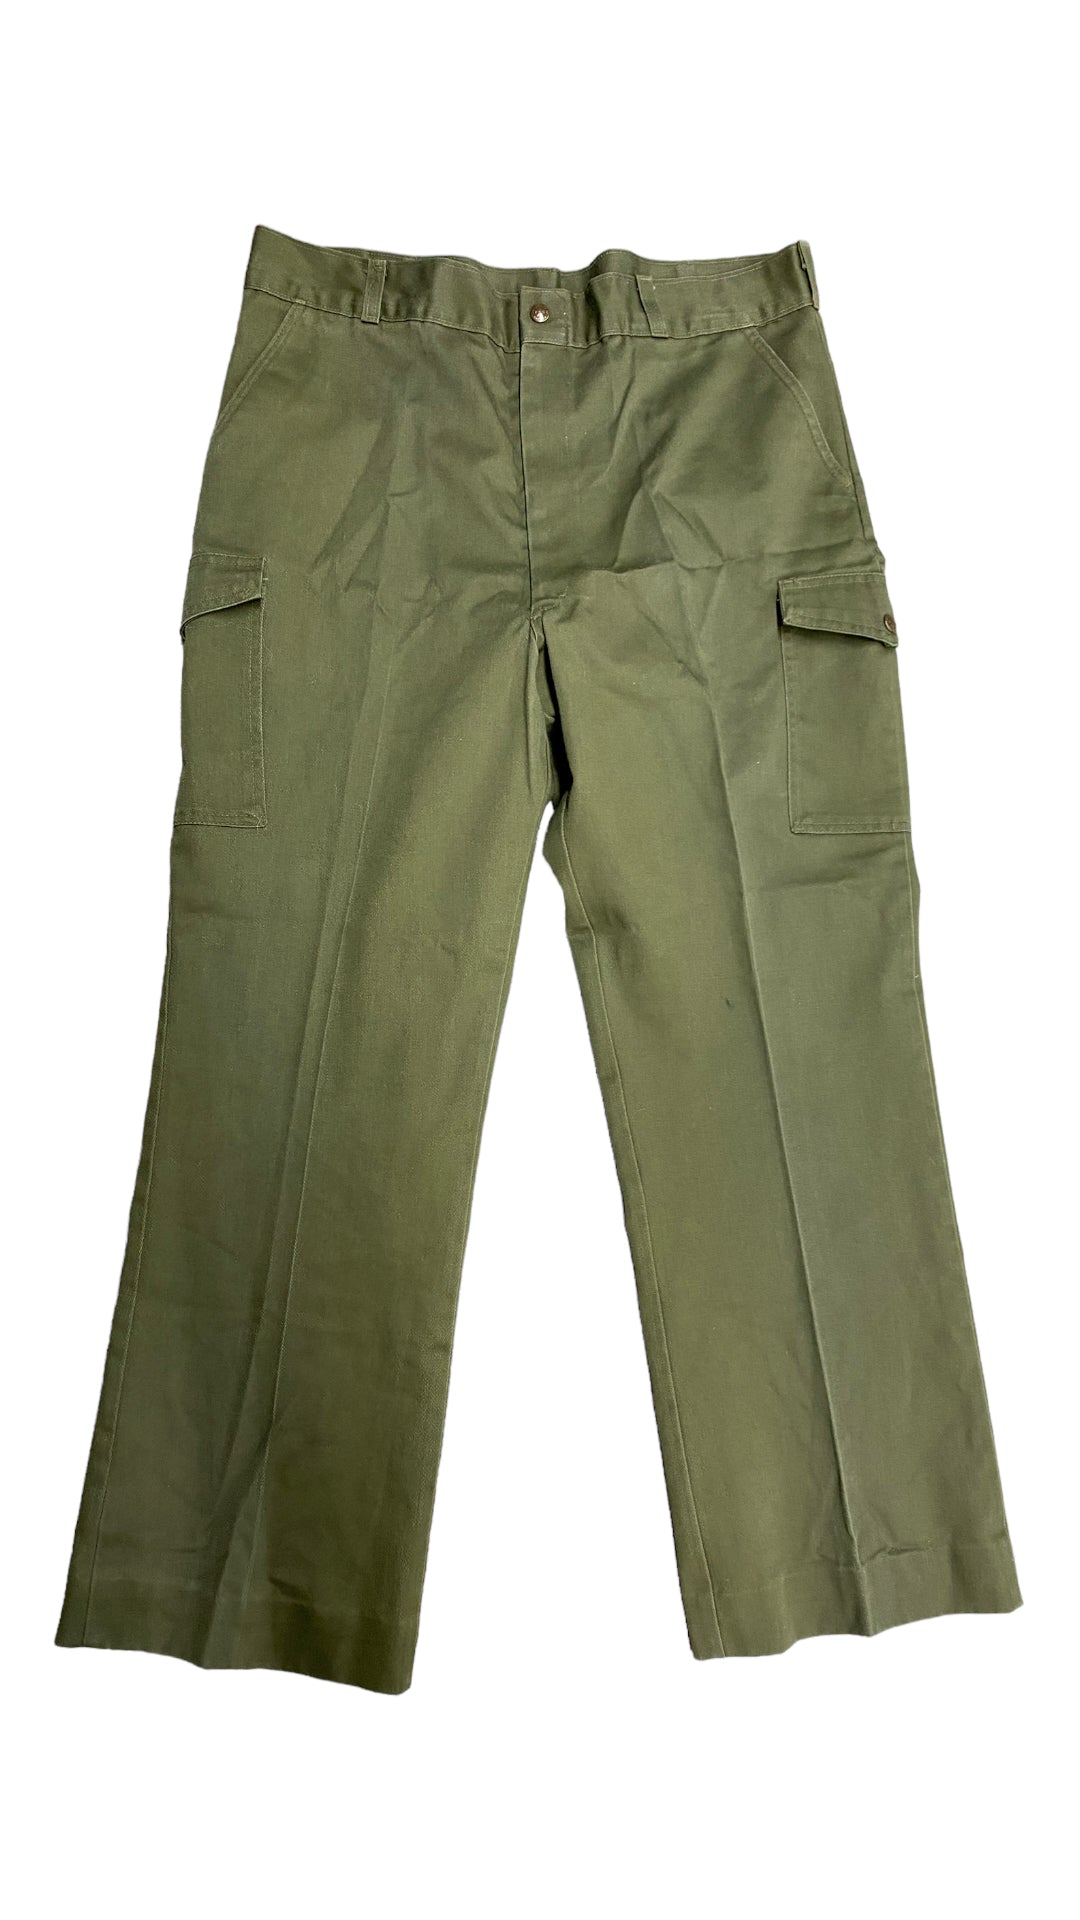 VTG Green Boy Scout Uniform Pants Sz 37x30